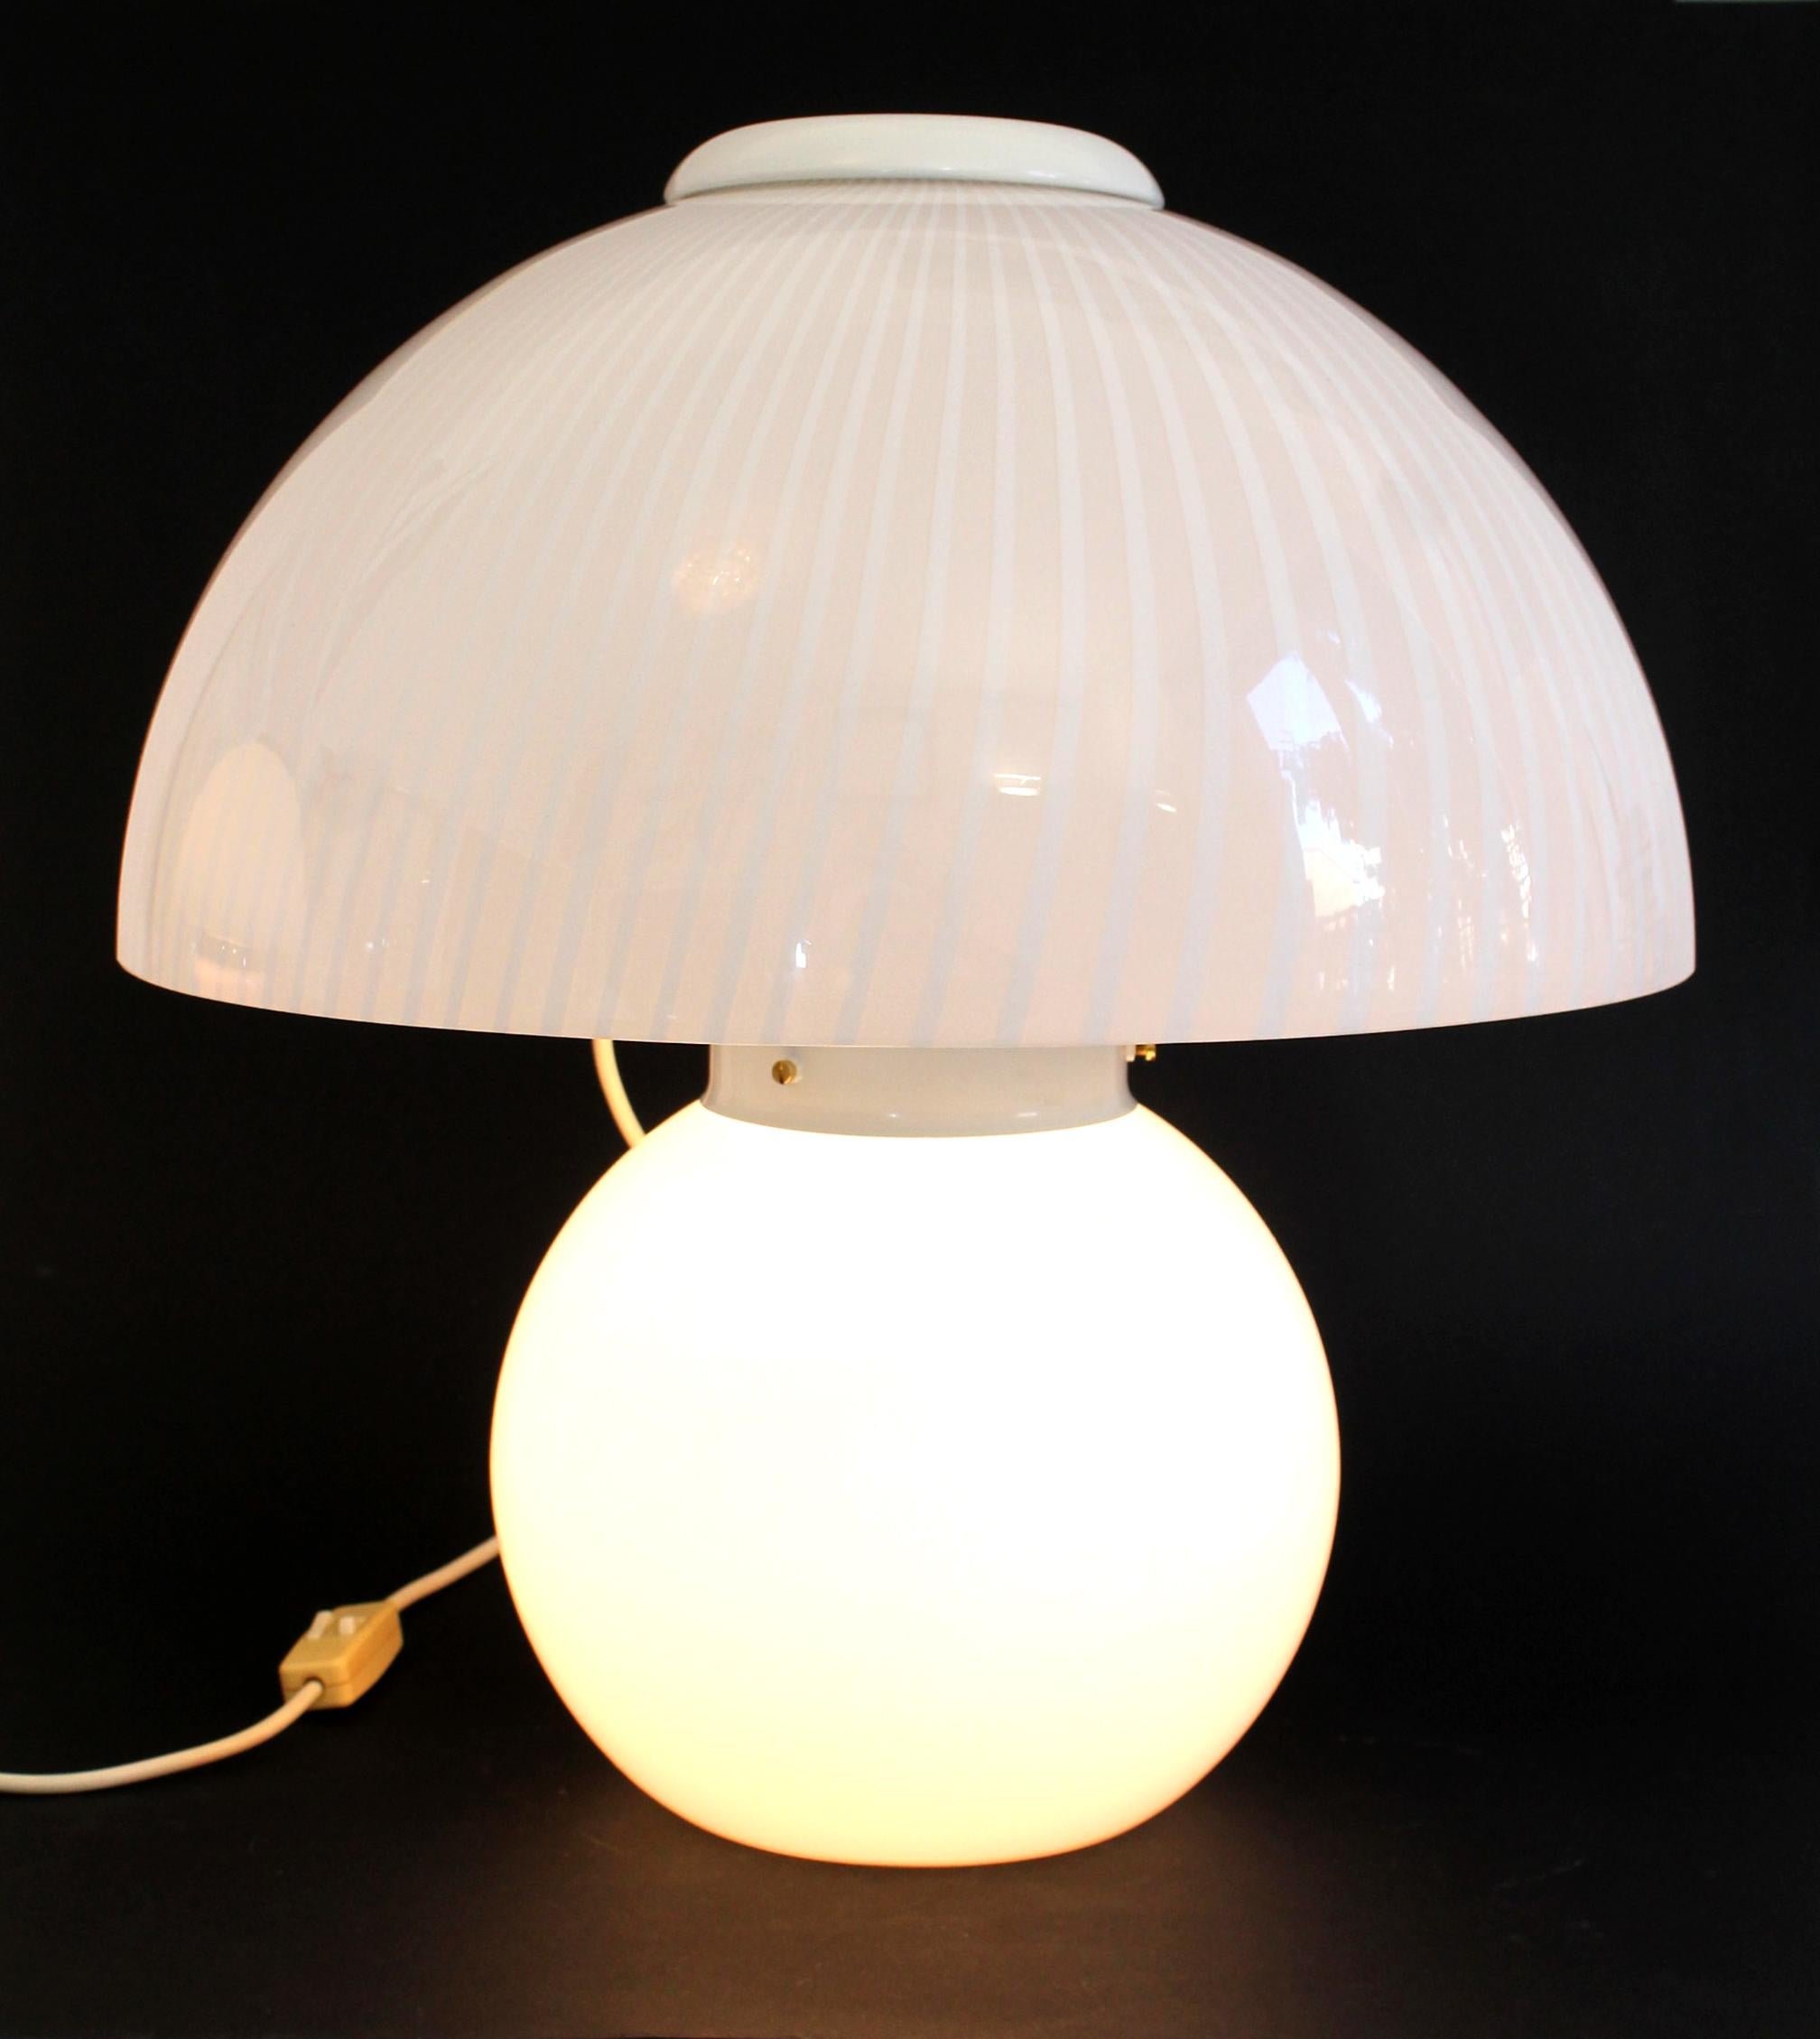 Vintage classic mushroom swirl Murano Glas Tischlampe von VeLuce (Made in Italy) aus den 1970er Jahren.

Abmessungen: 48 cm Höhe x 43 cm Durchmesser oben x 25 cm Durchmesser unten.

Die Schönheit des klassischen Murano-Glases macht diese Lampe